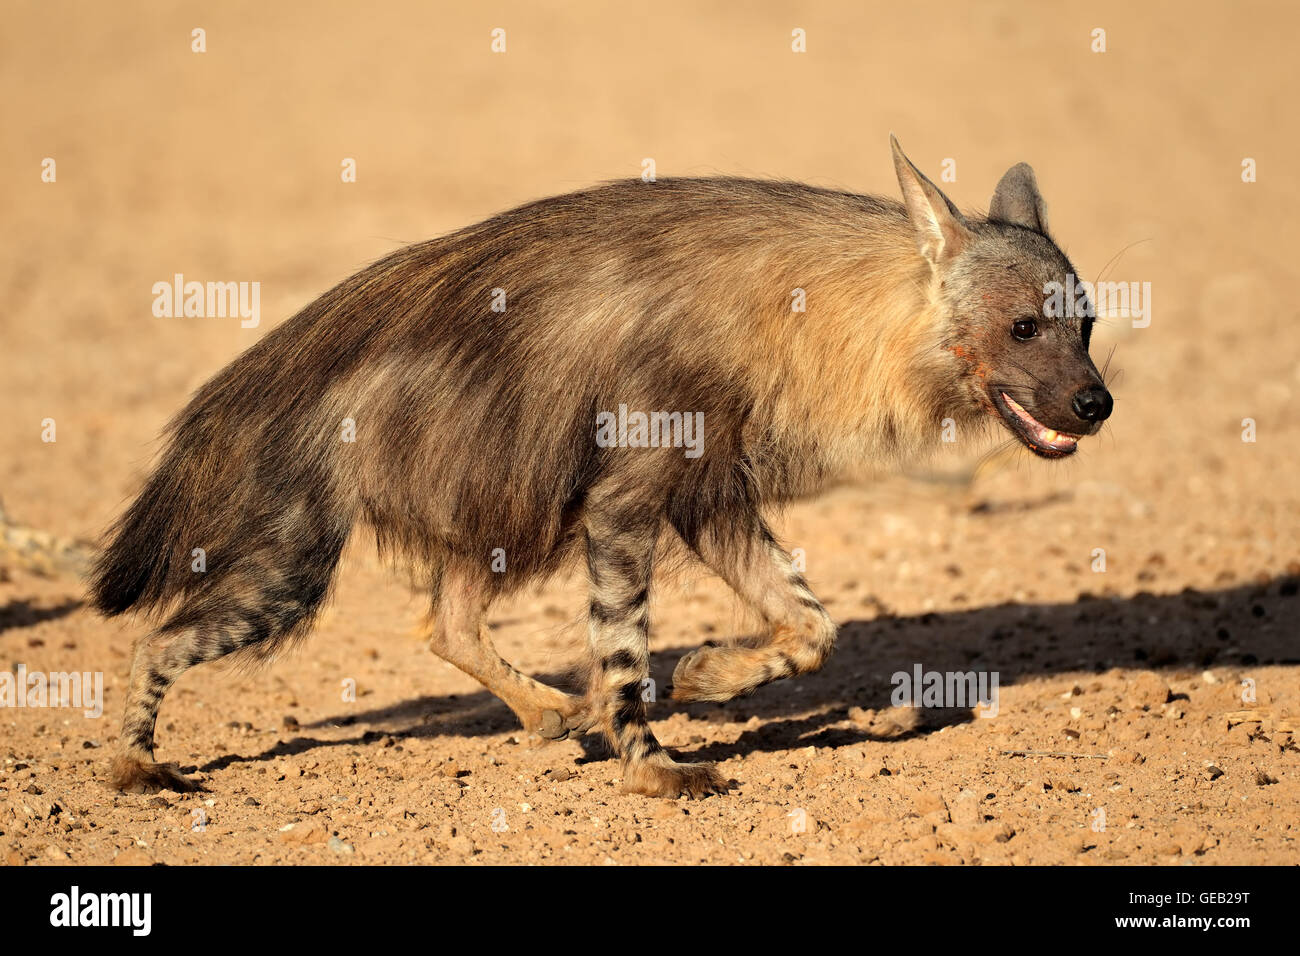 Alert hyène brune (Hyaena brunnea), désert du Kalahari, Afrique du Sud Banque D'Images